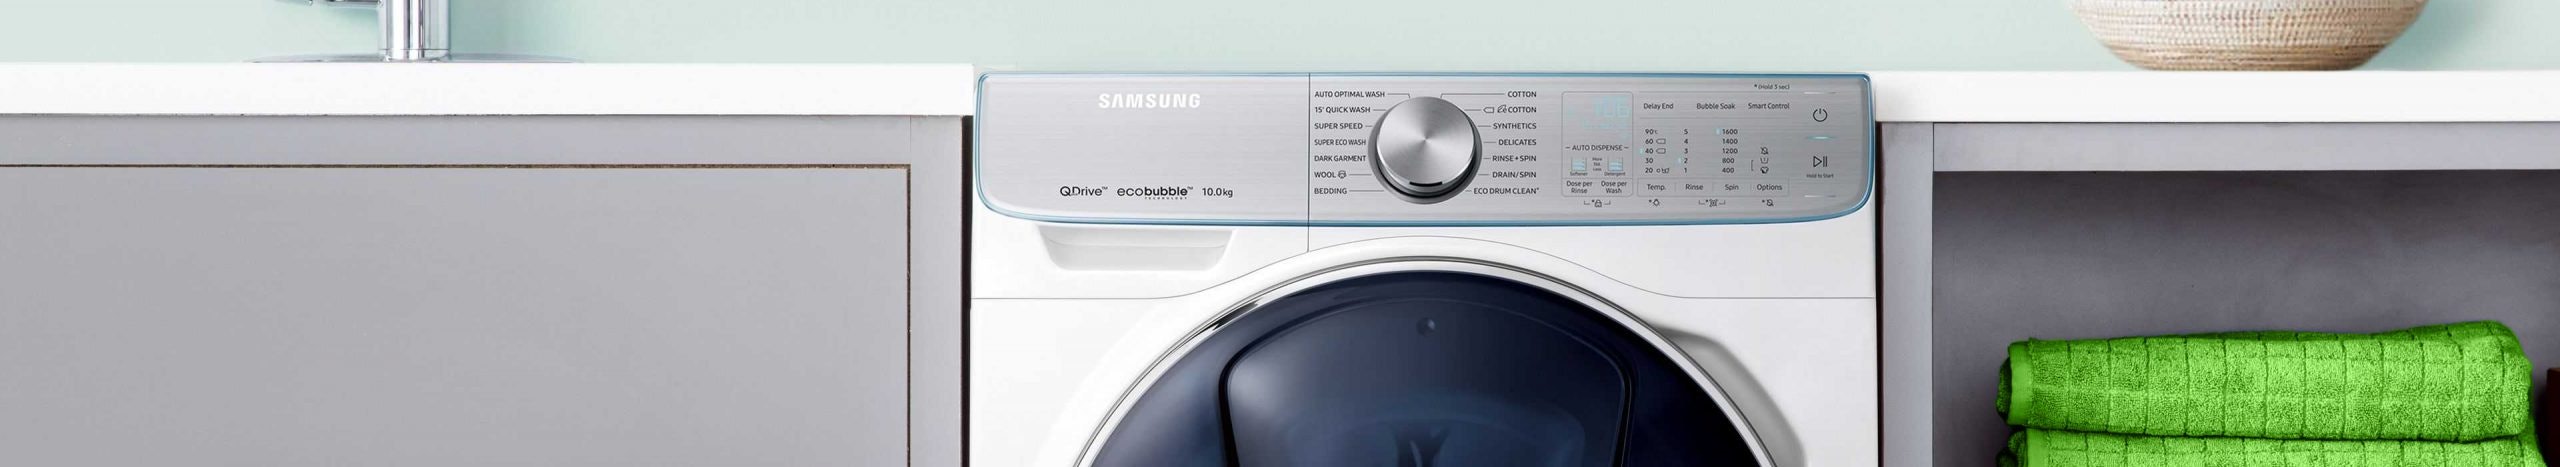 Samsung Eco Bubble wasmachine.